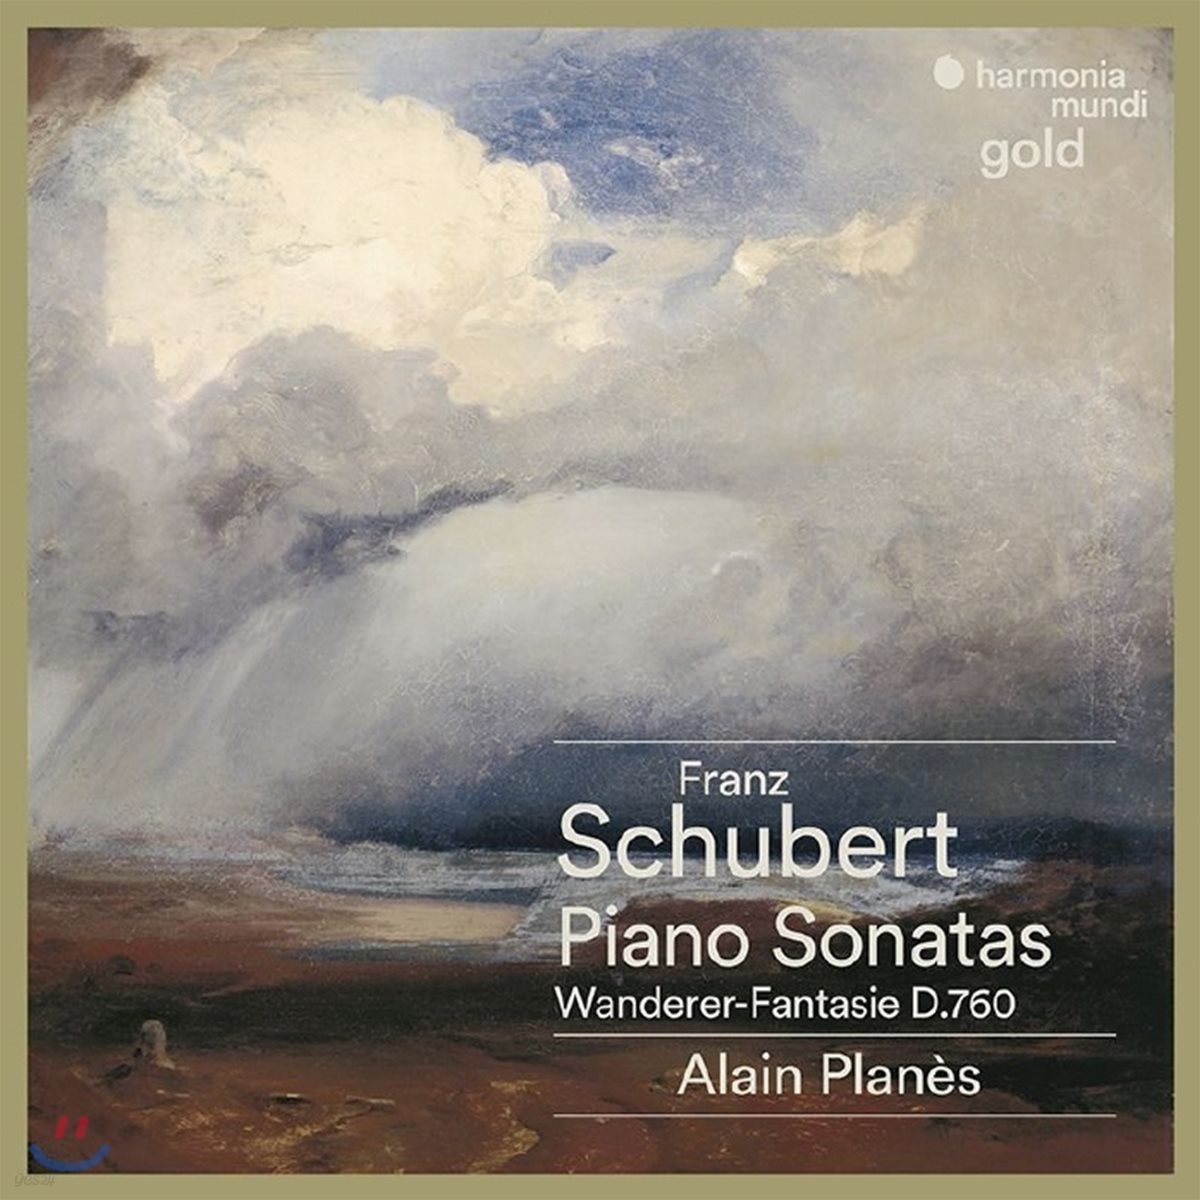 Alain Planes 슈베르트: 피아노 소나타 D537, D575, D784, D625, D840, 방랑자 환상곡 D760 (Schubert: Piano Sonatas, Wanderer-Fantasie)